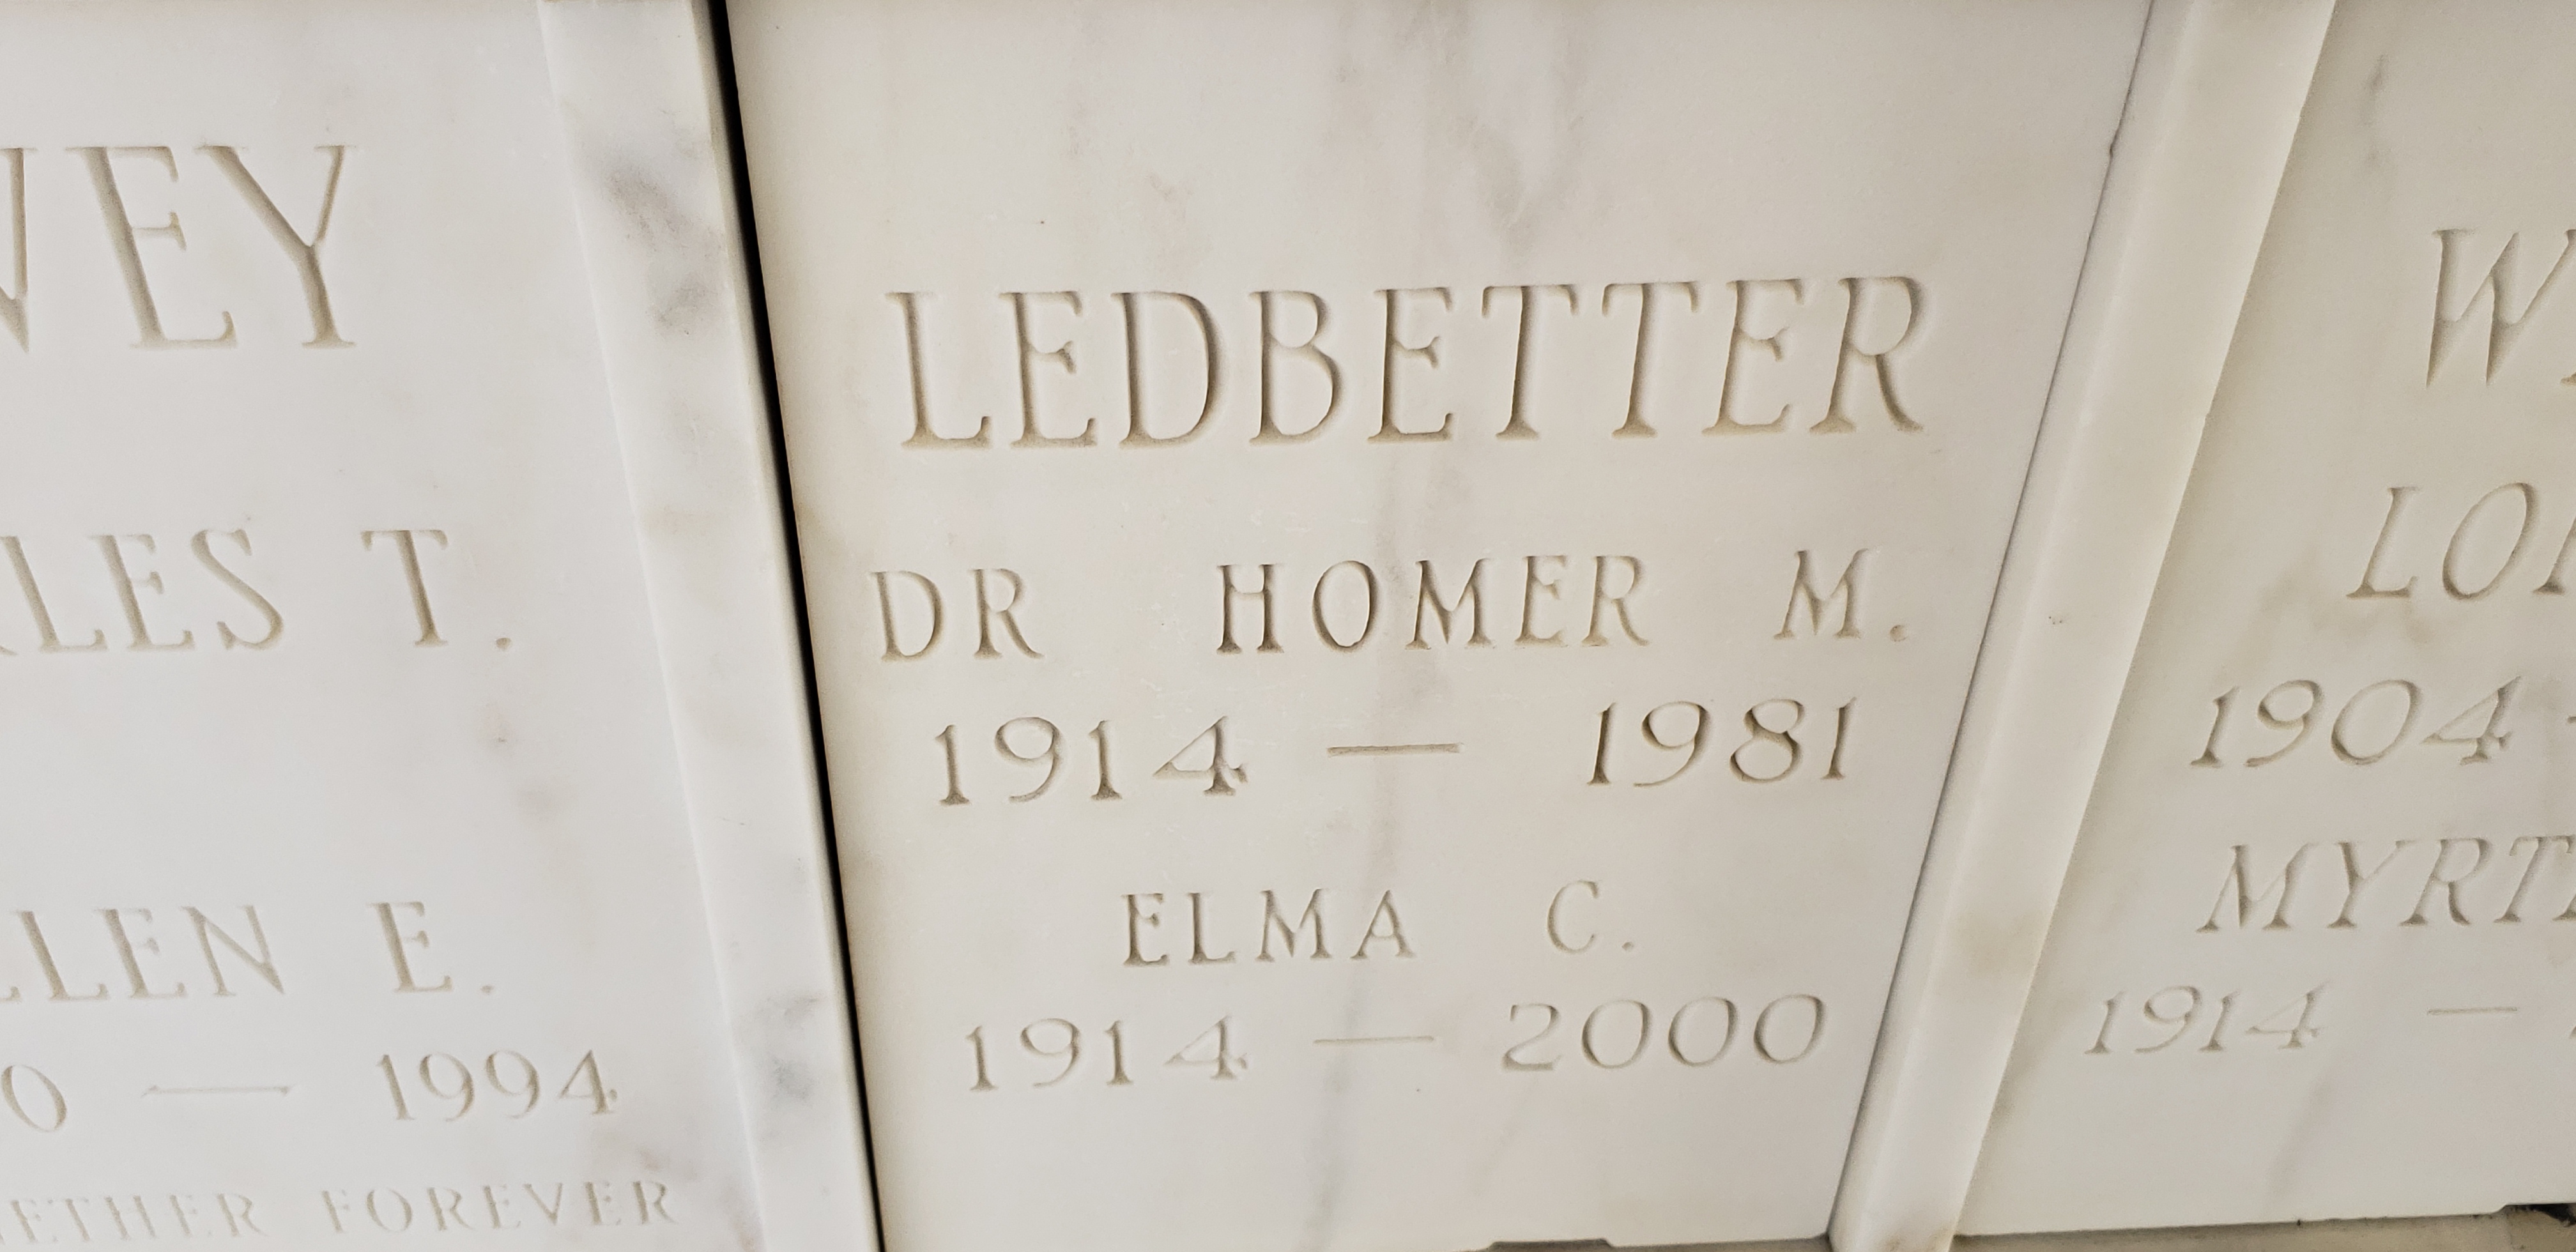 Dr Homer M Ledbetter